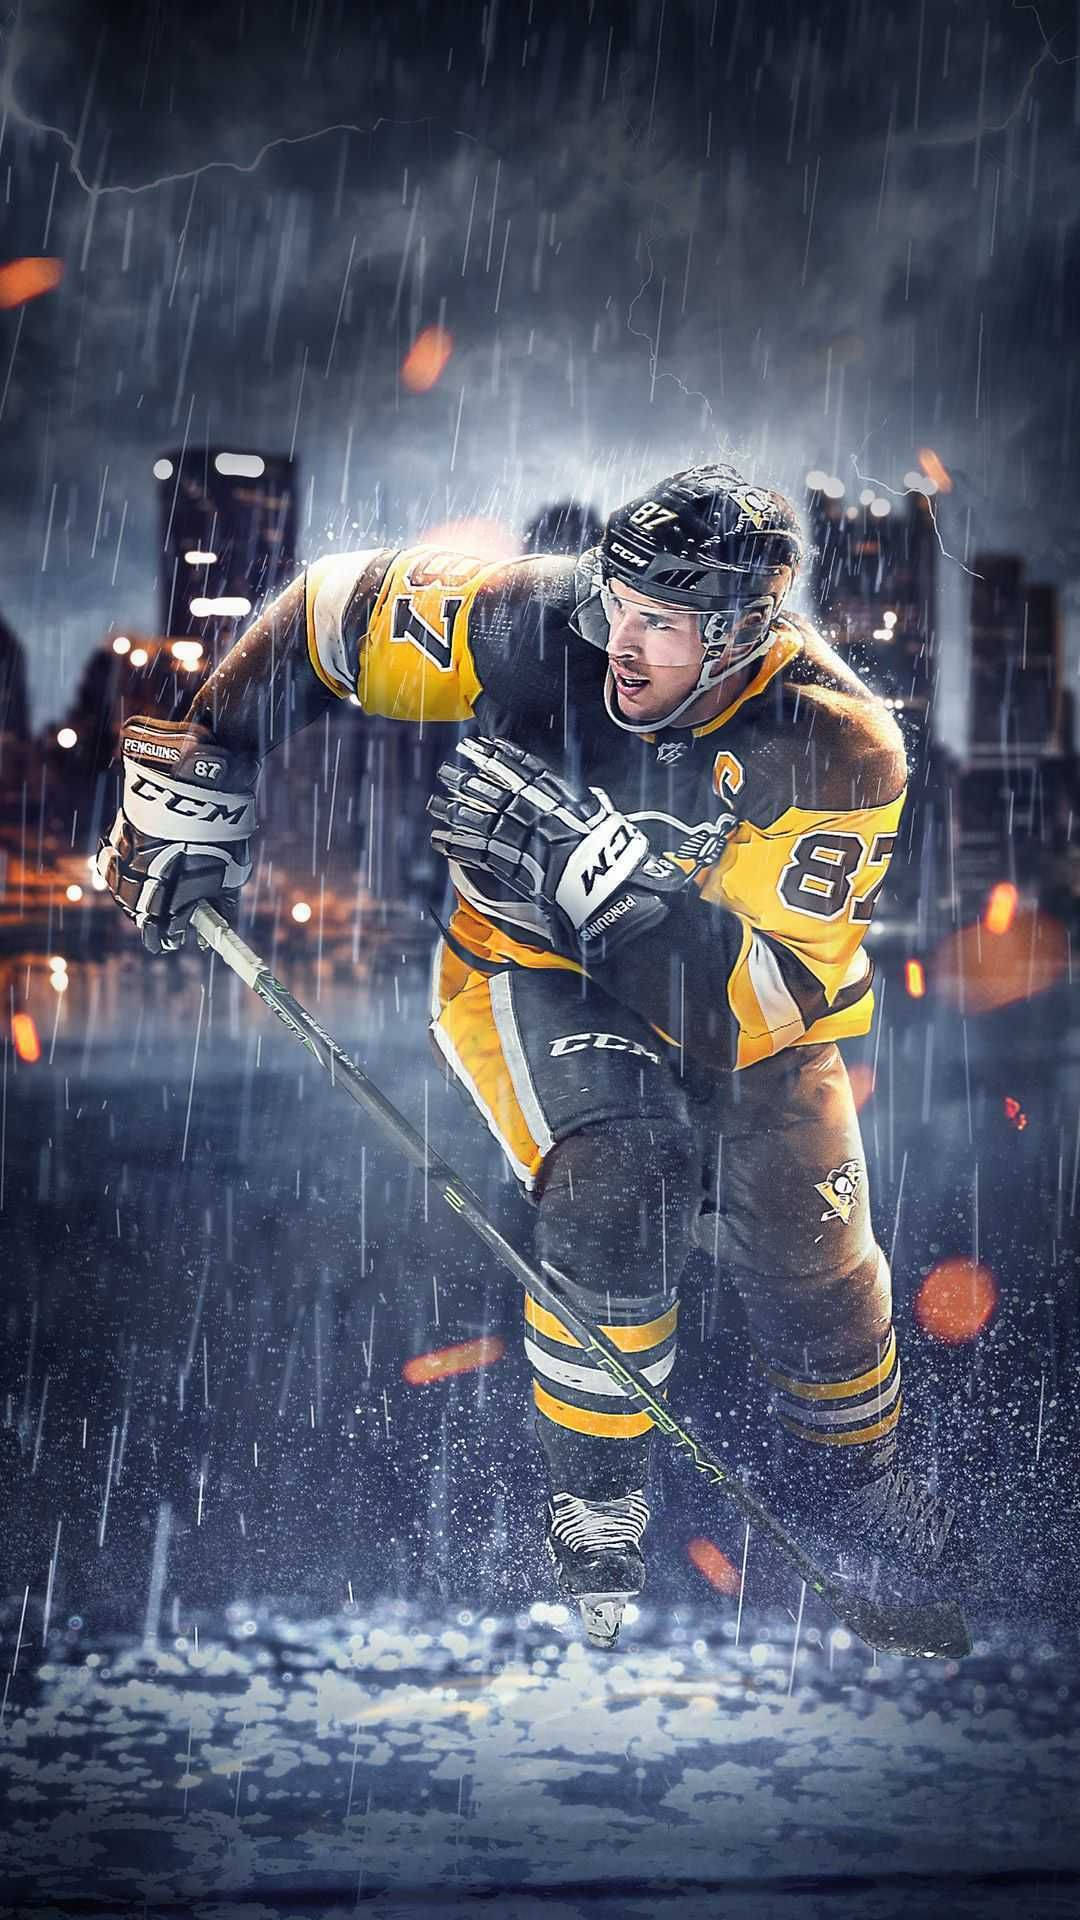 Eineishockeyspieler Spielt Im Regen. Wallpaper